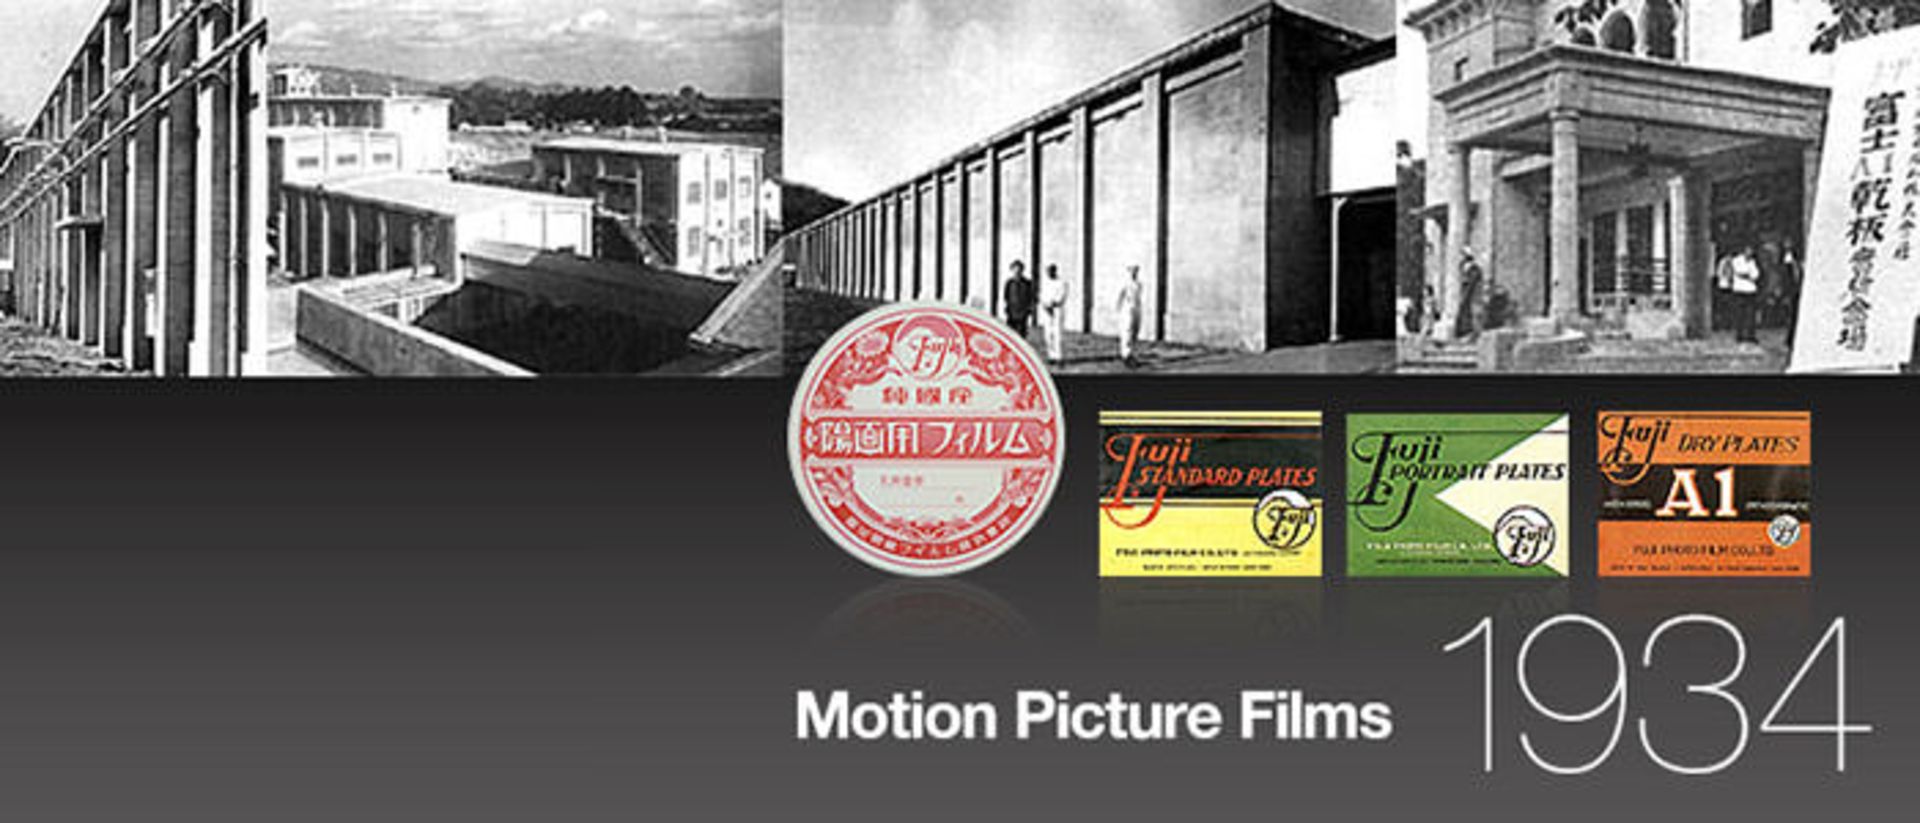 فوجی فیلم / Fujifilm